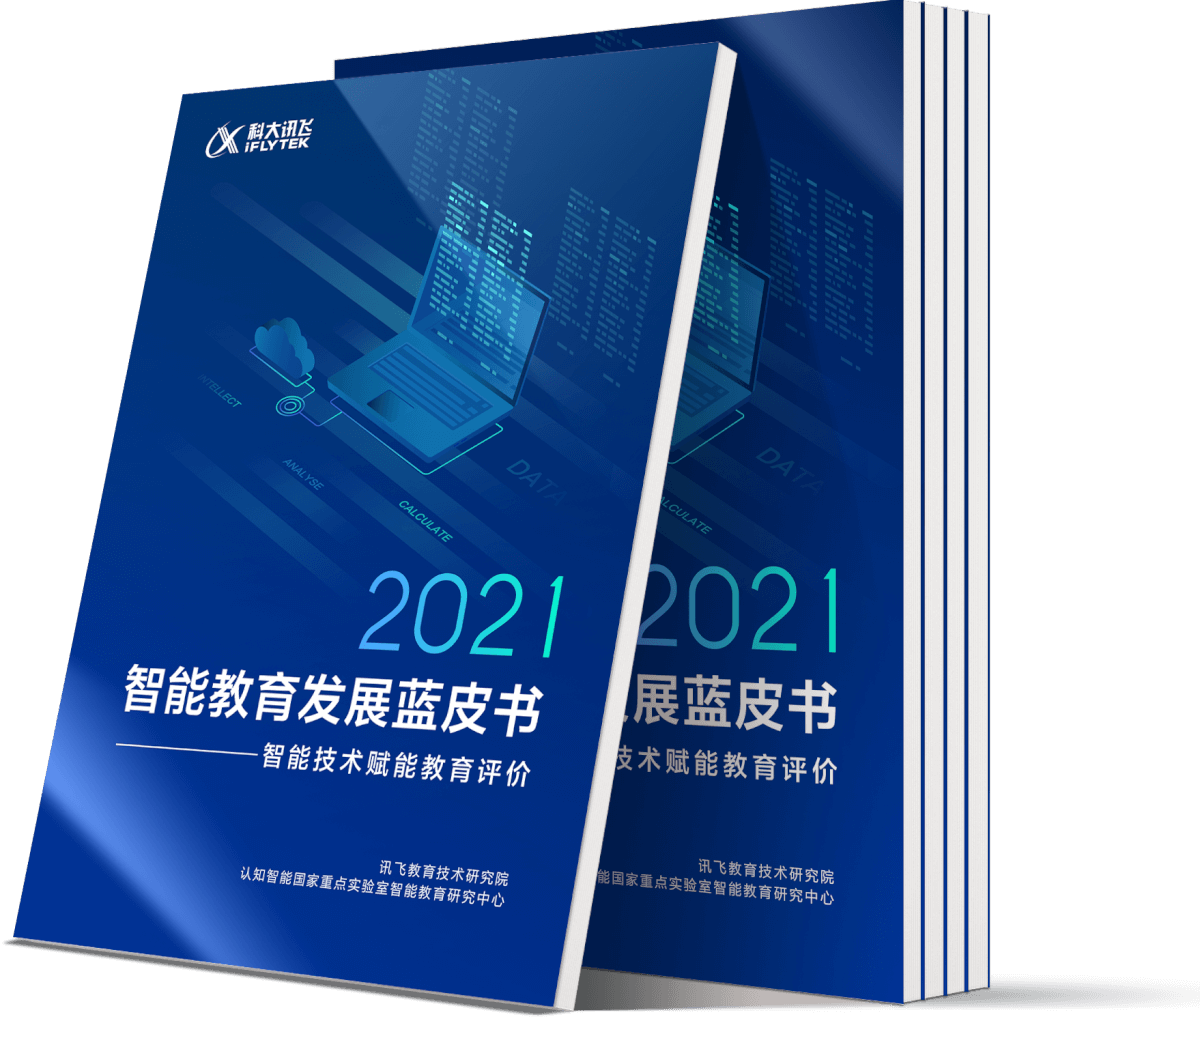 《2021智能教育发展蓝皮书——智能技术赋能教育评价》正式发布-黑板洞察